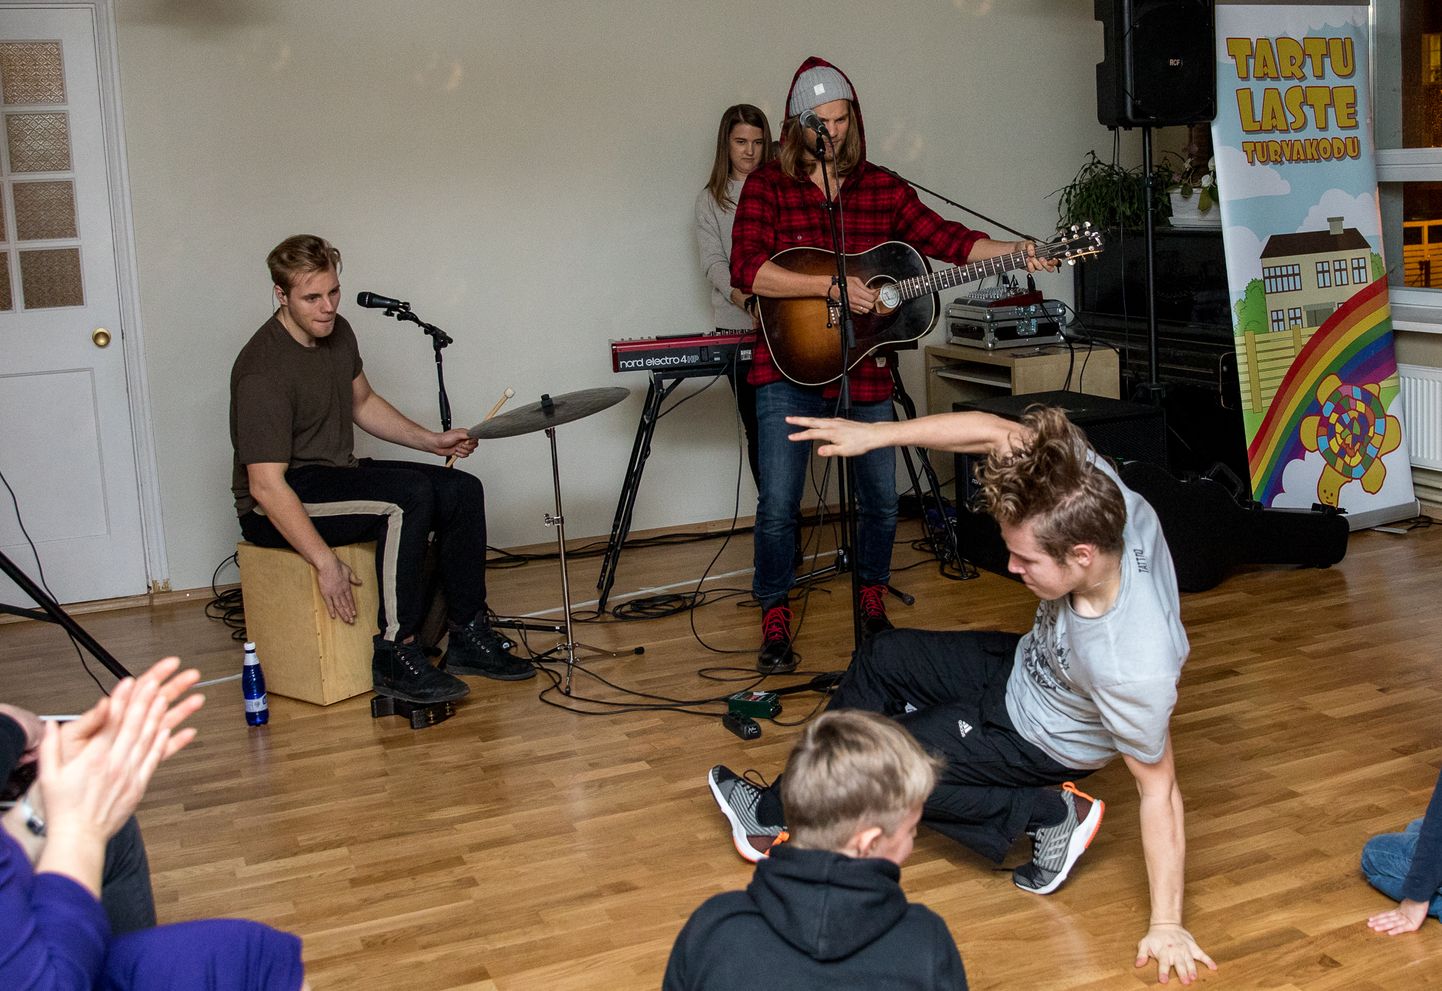 Tartu turvakodus esines Daniel Levi bänd ja DanceActi tantsustuudio.